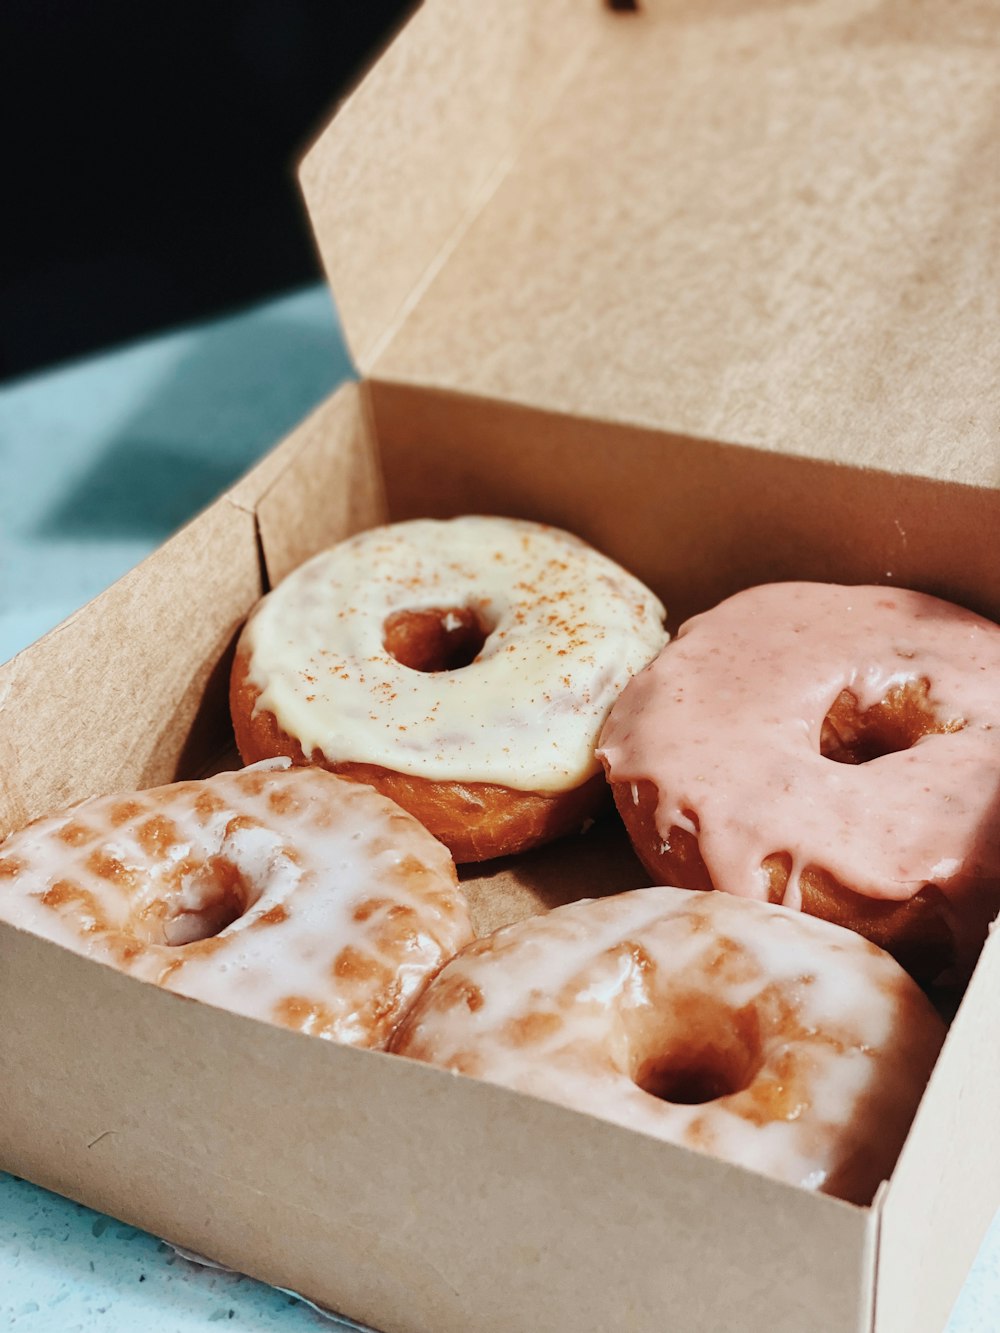 donuts castanhos e brancos na caixa